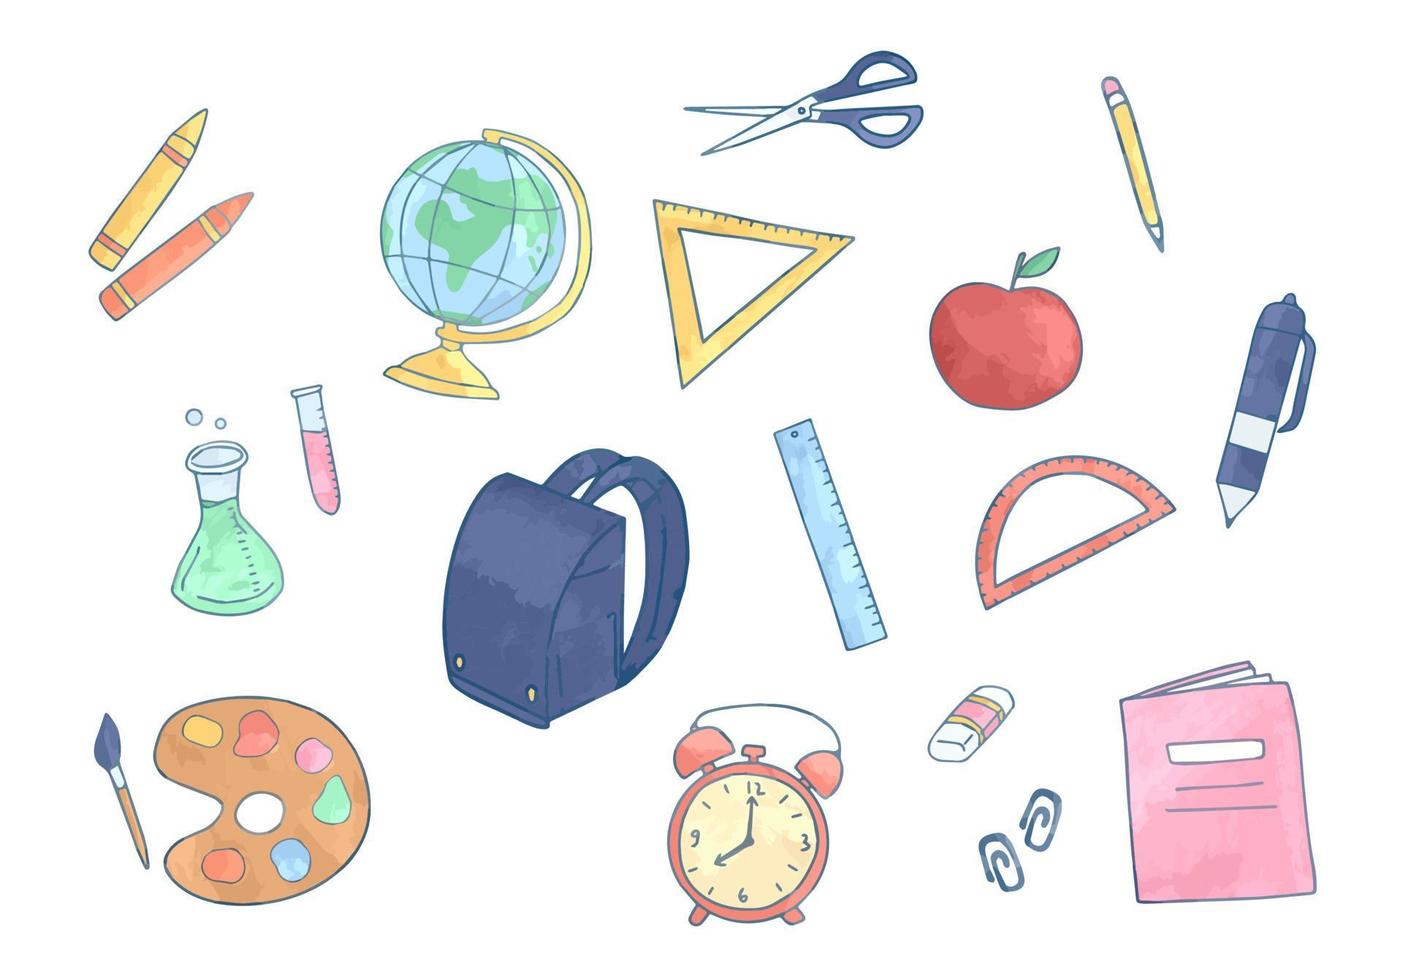 elementos de papelaria escolares coloridos isolados, itens escolares em aquarela desenhados à mão vetor